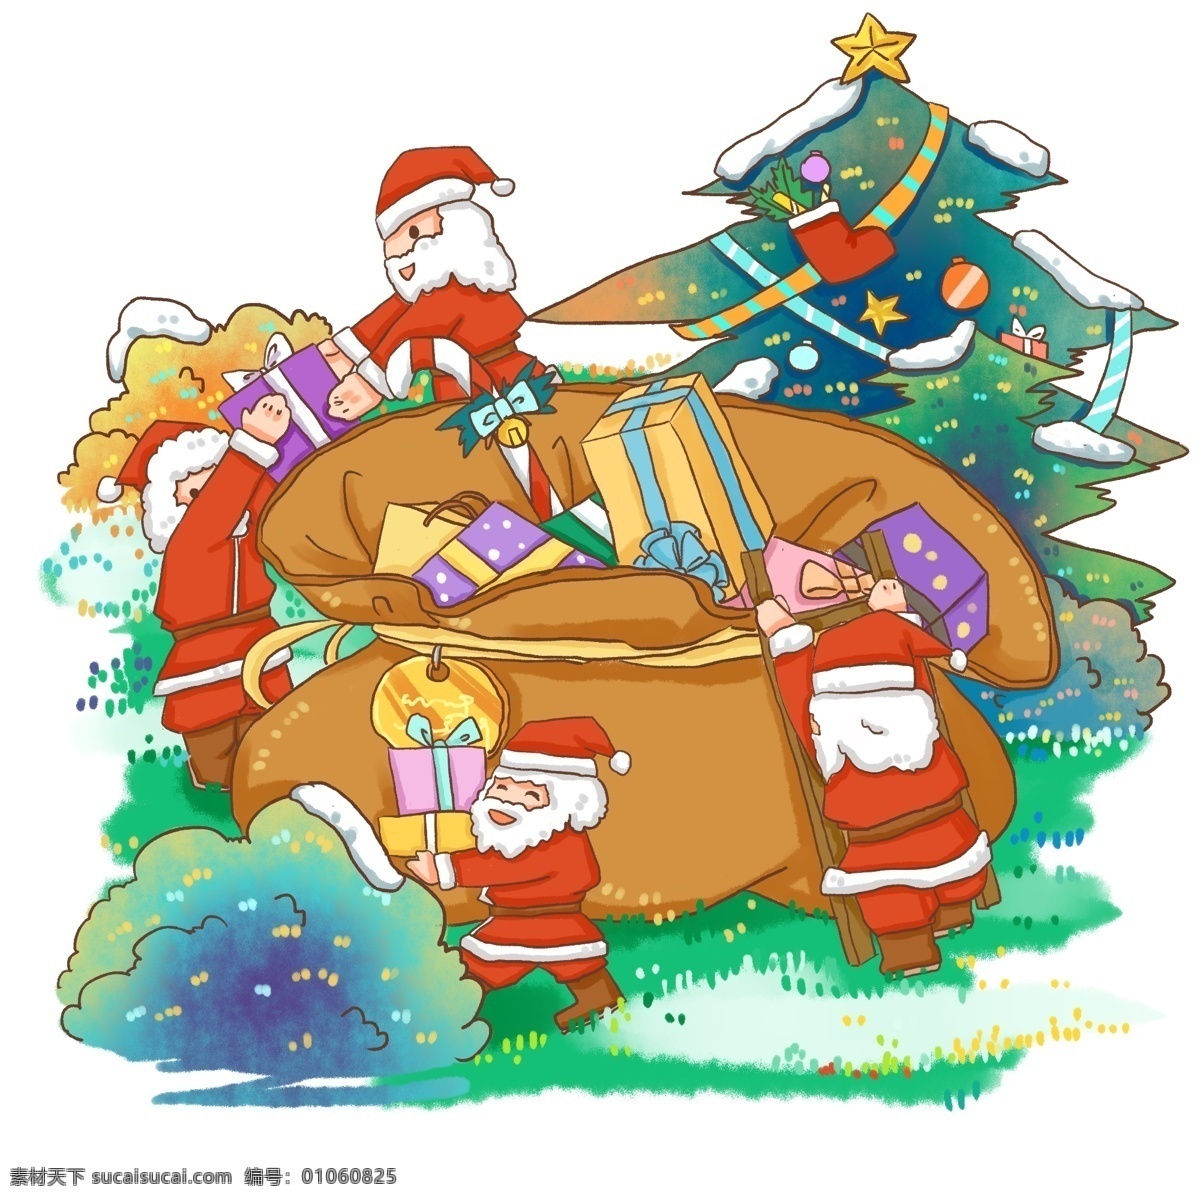 圣诞节 商业 元素 圣诞老人 场景 准备 礼物 传统 人物 节日 西方节日 习俗 包裹 圣诞树 雪景 冬天 欢乐